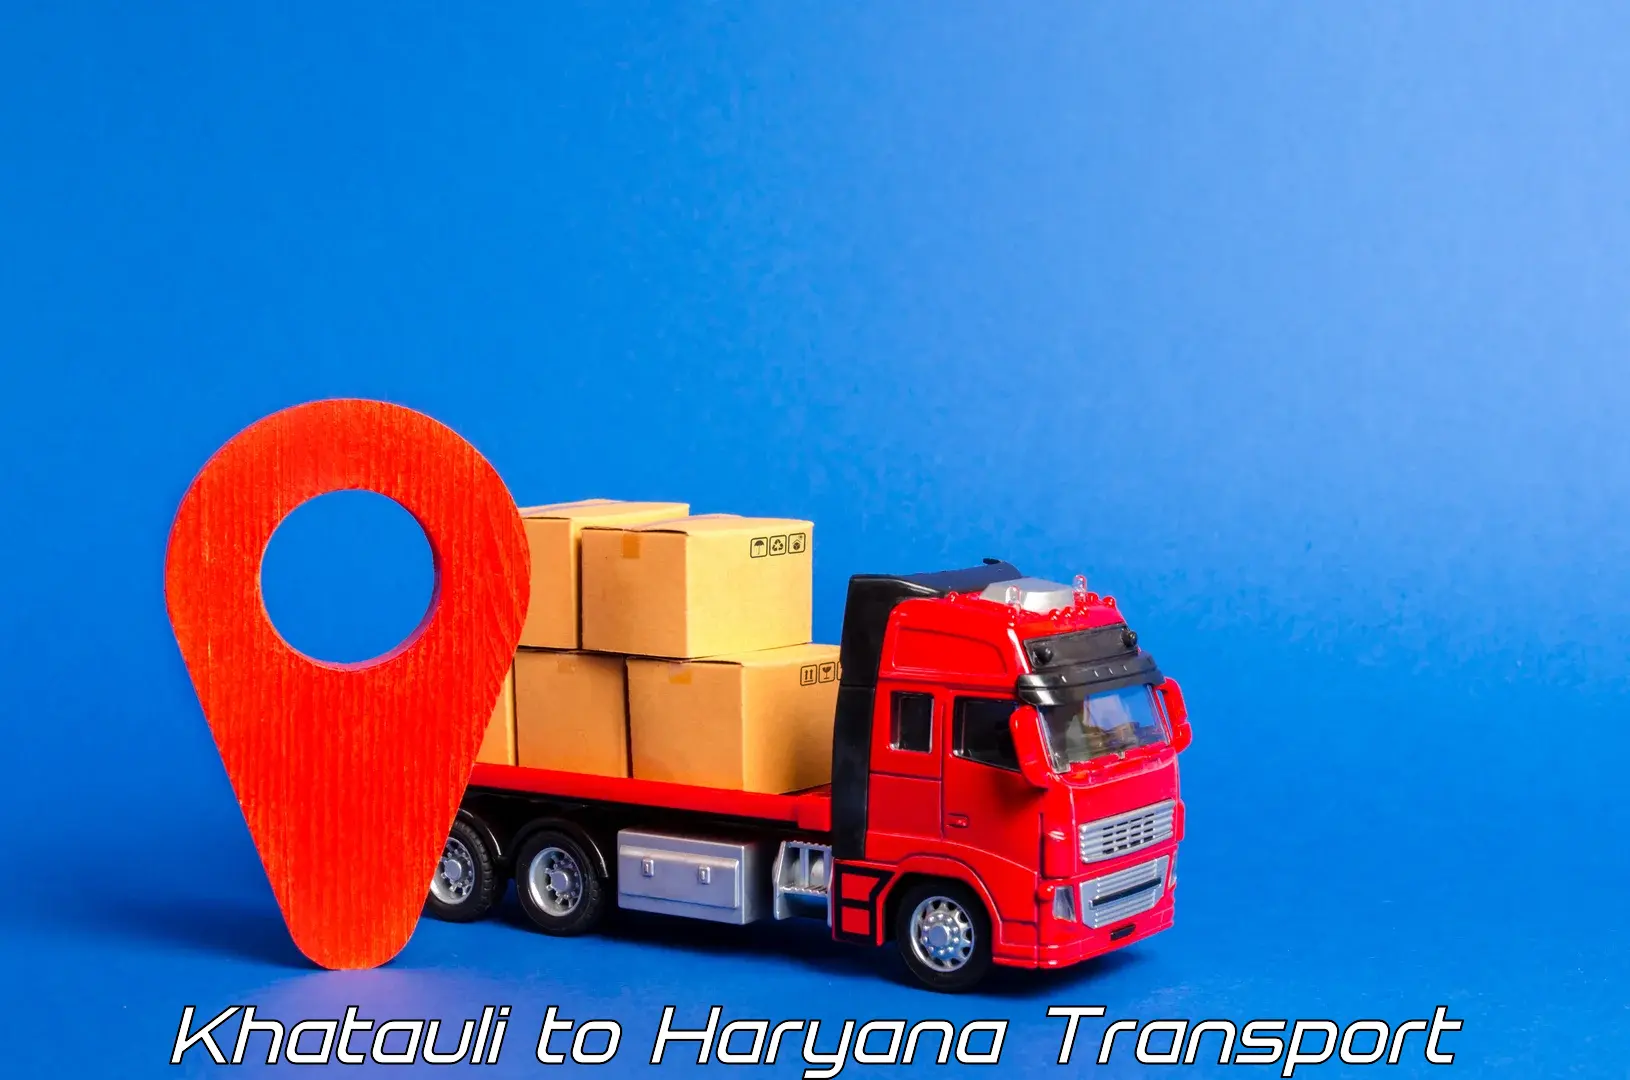 Parcel transport services Khatauli to Sonipat